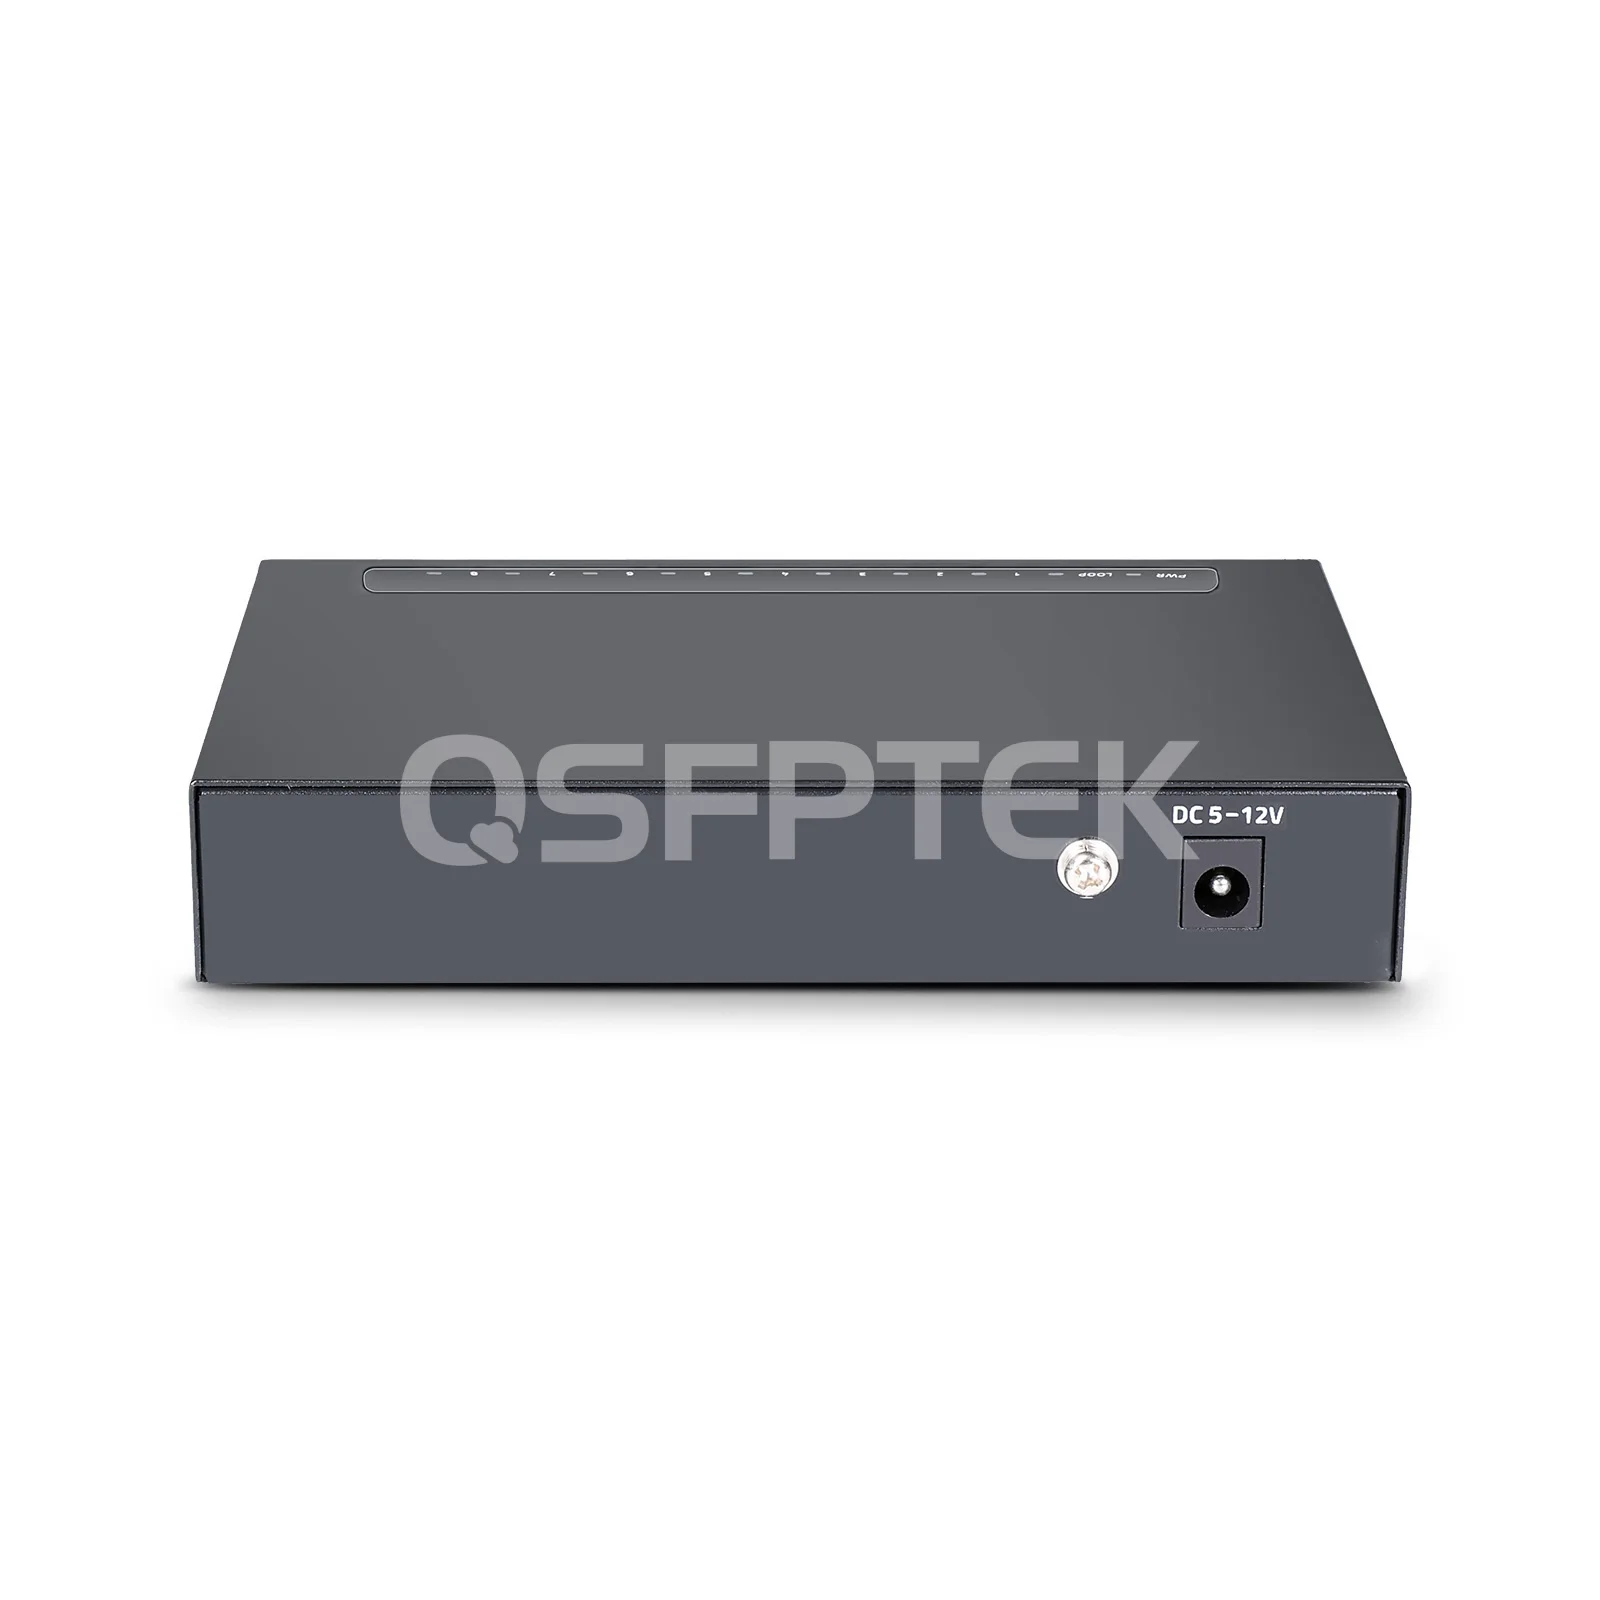 S1300-8T, 8-Port Gigabit Ethernet L2 Unmanaged Switch, 8x 100/1000BASE-T  RJ45 Ports, Fanless